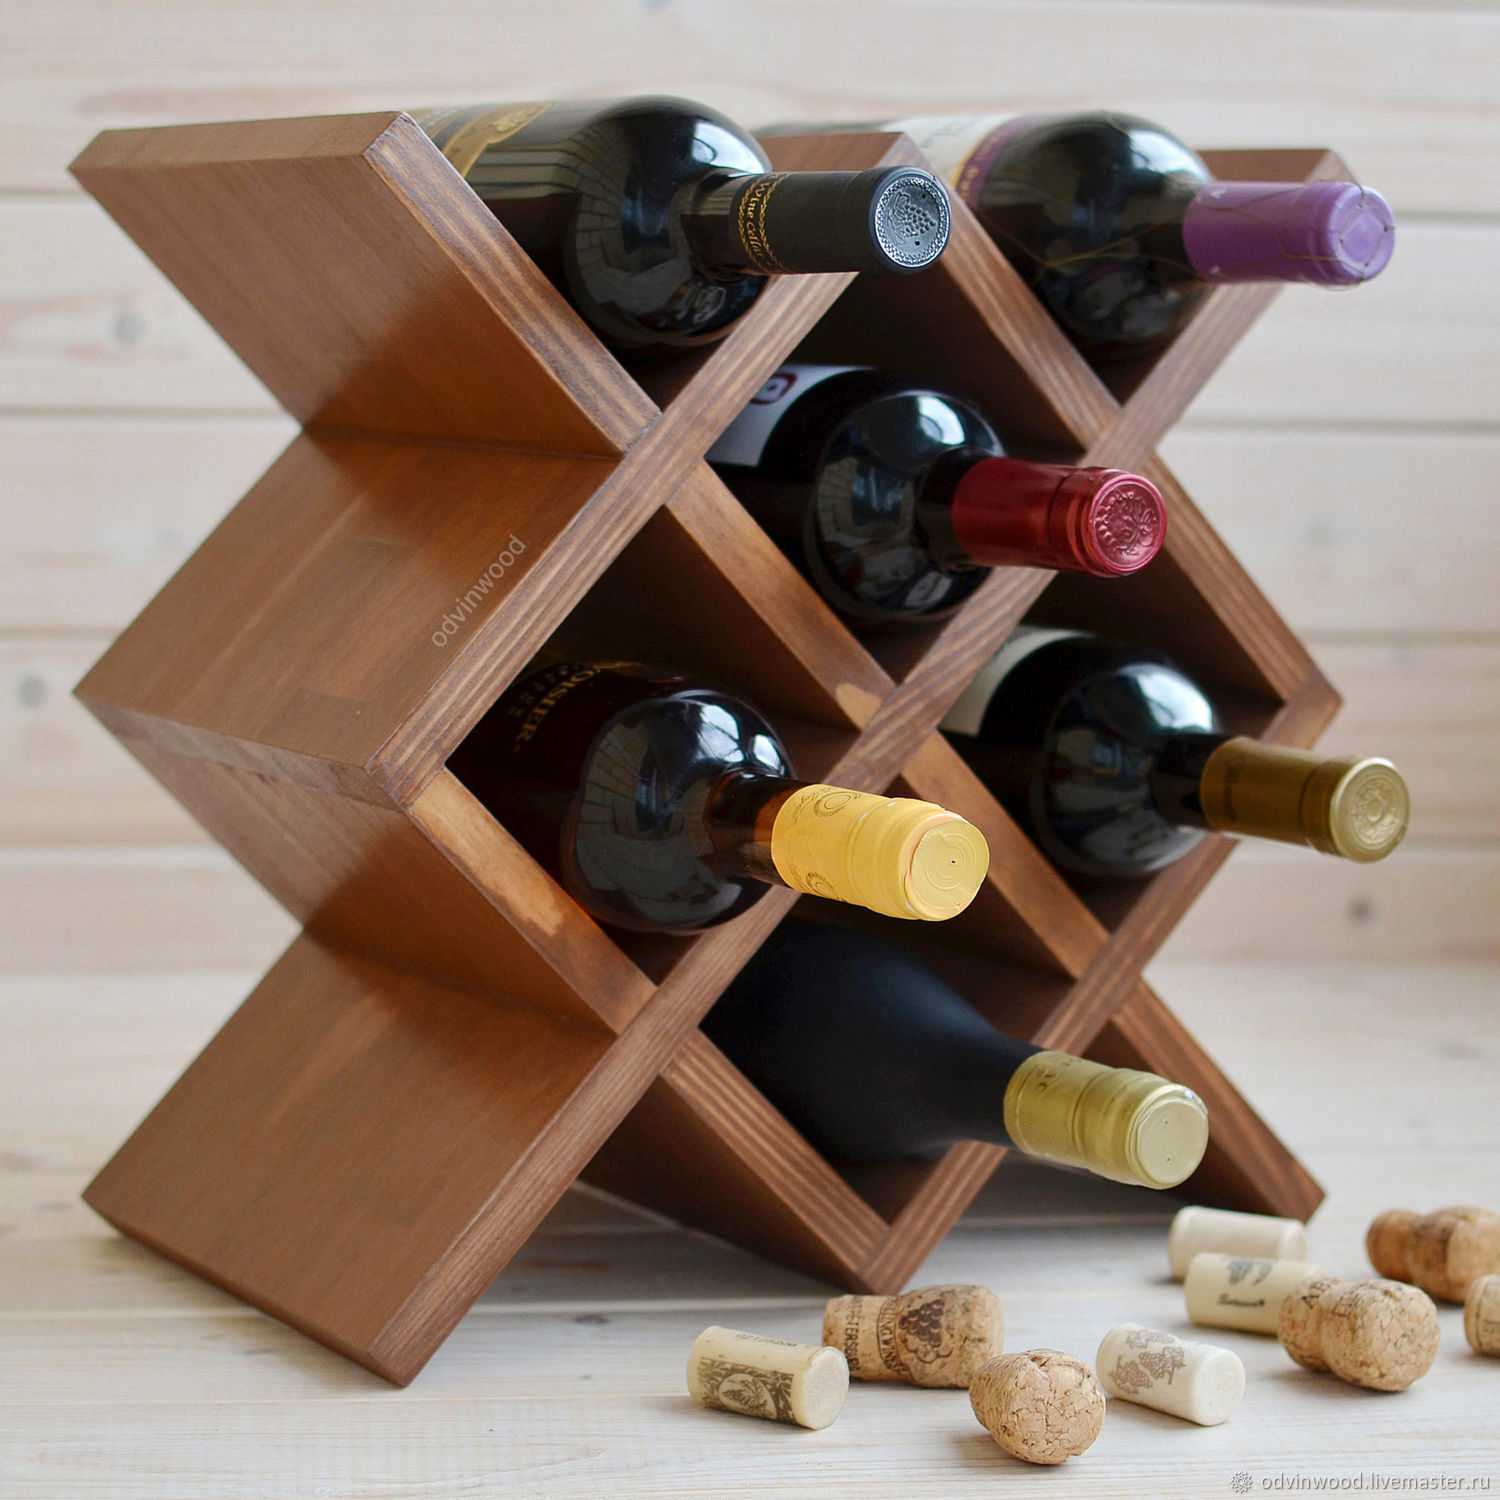 Пошаговая инструкция по изготовлению винного шкафа своими руками